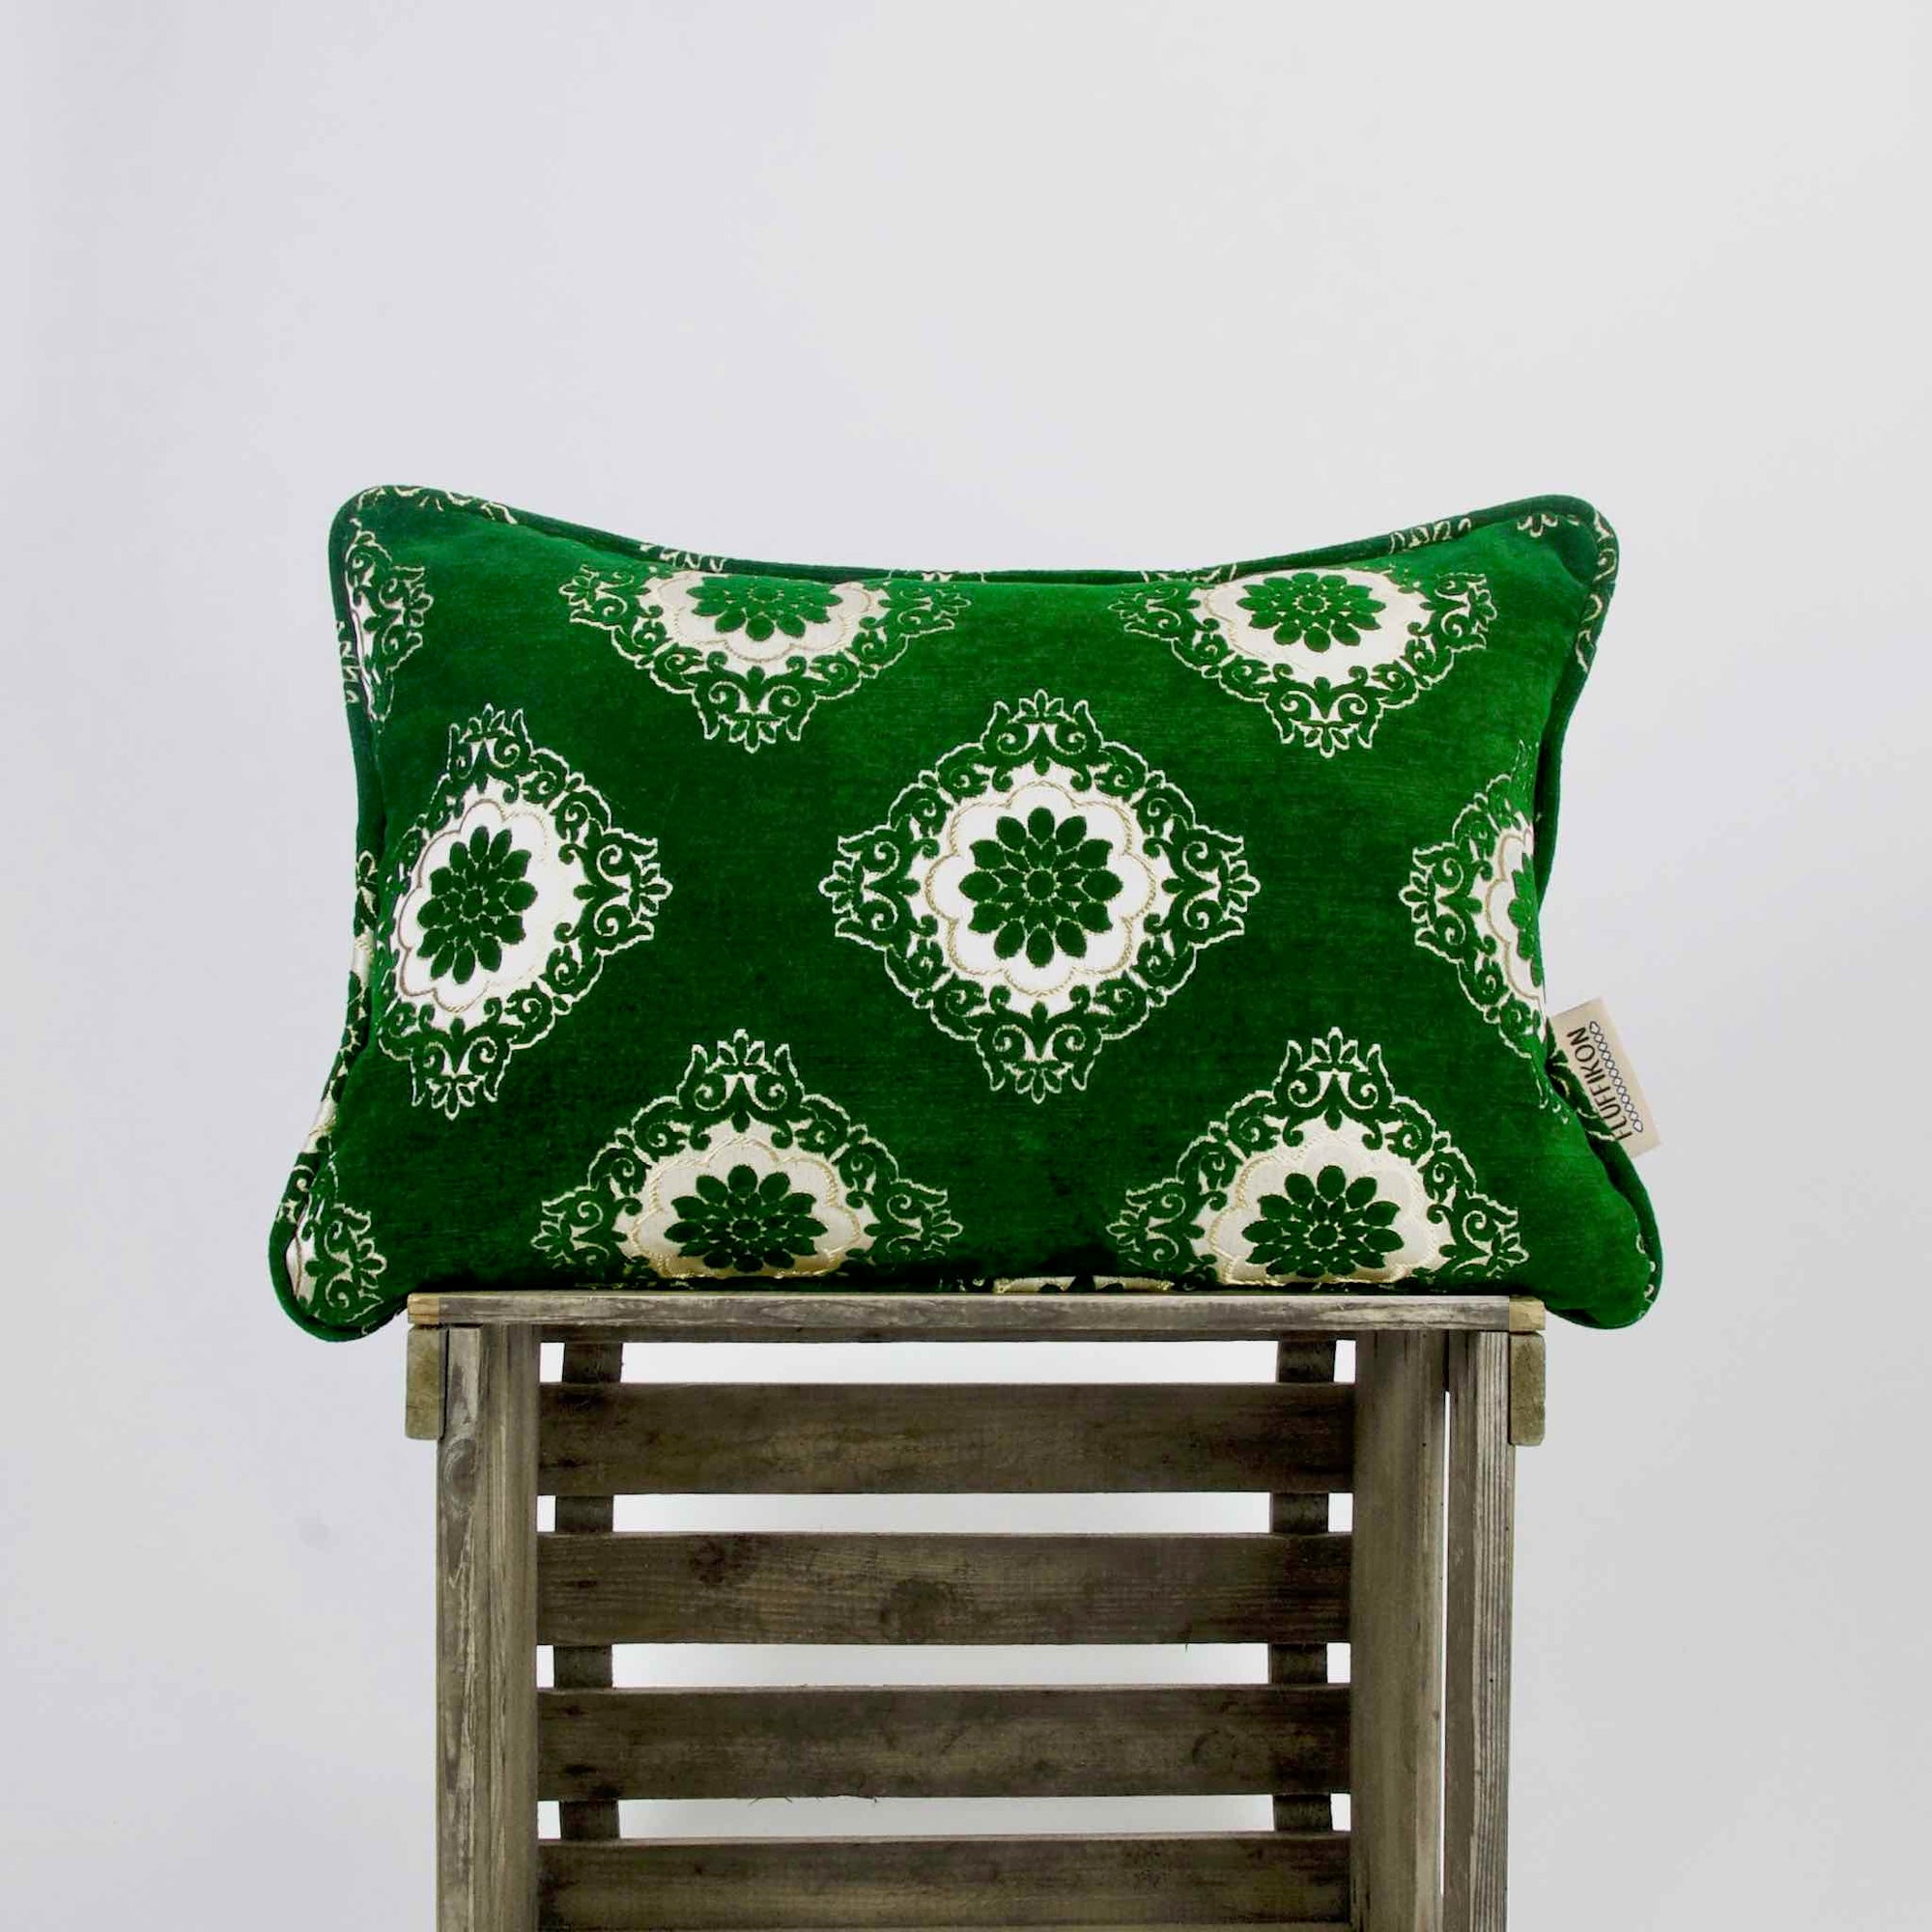 Emerald green velvet pillow on a wooden box.